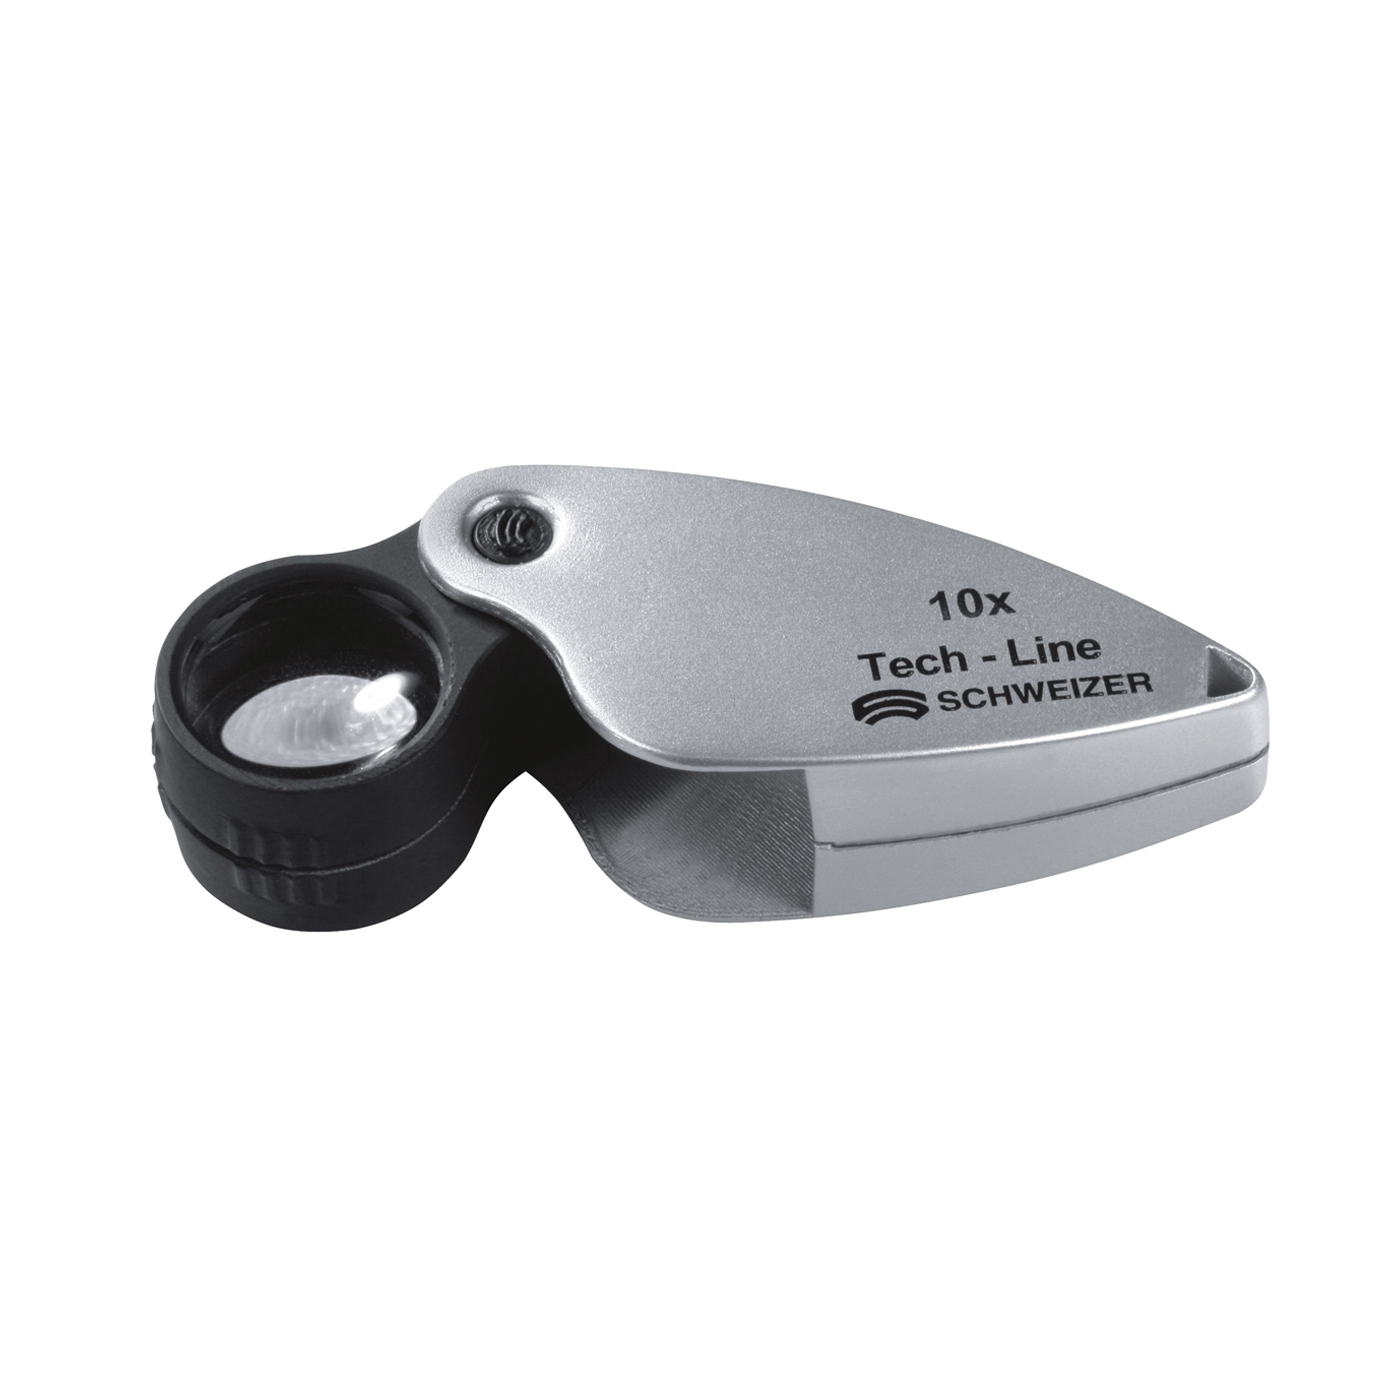 Tech-Line Precision Folding Magnifier, 10x - 1 piece